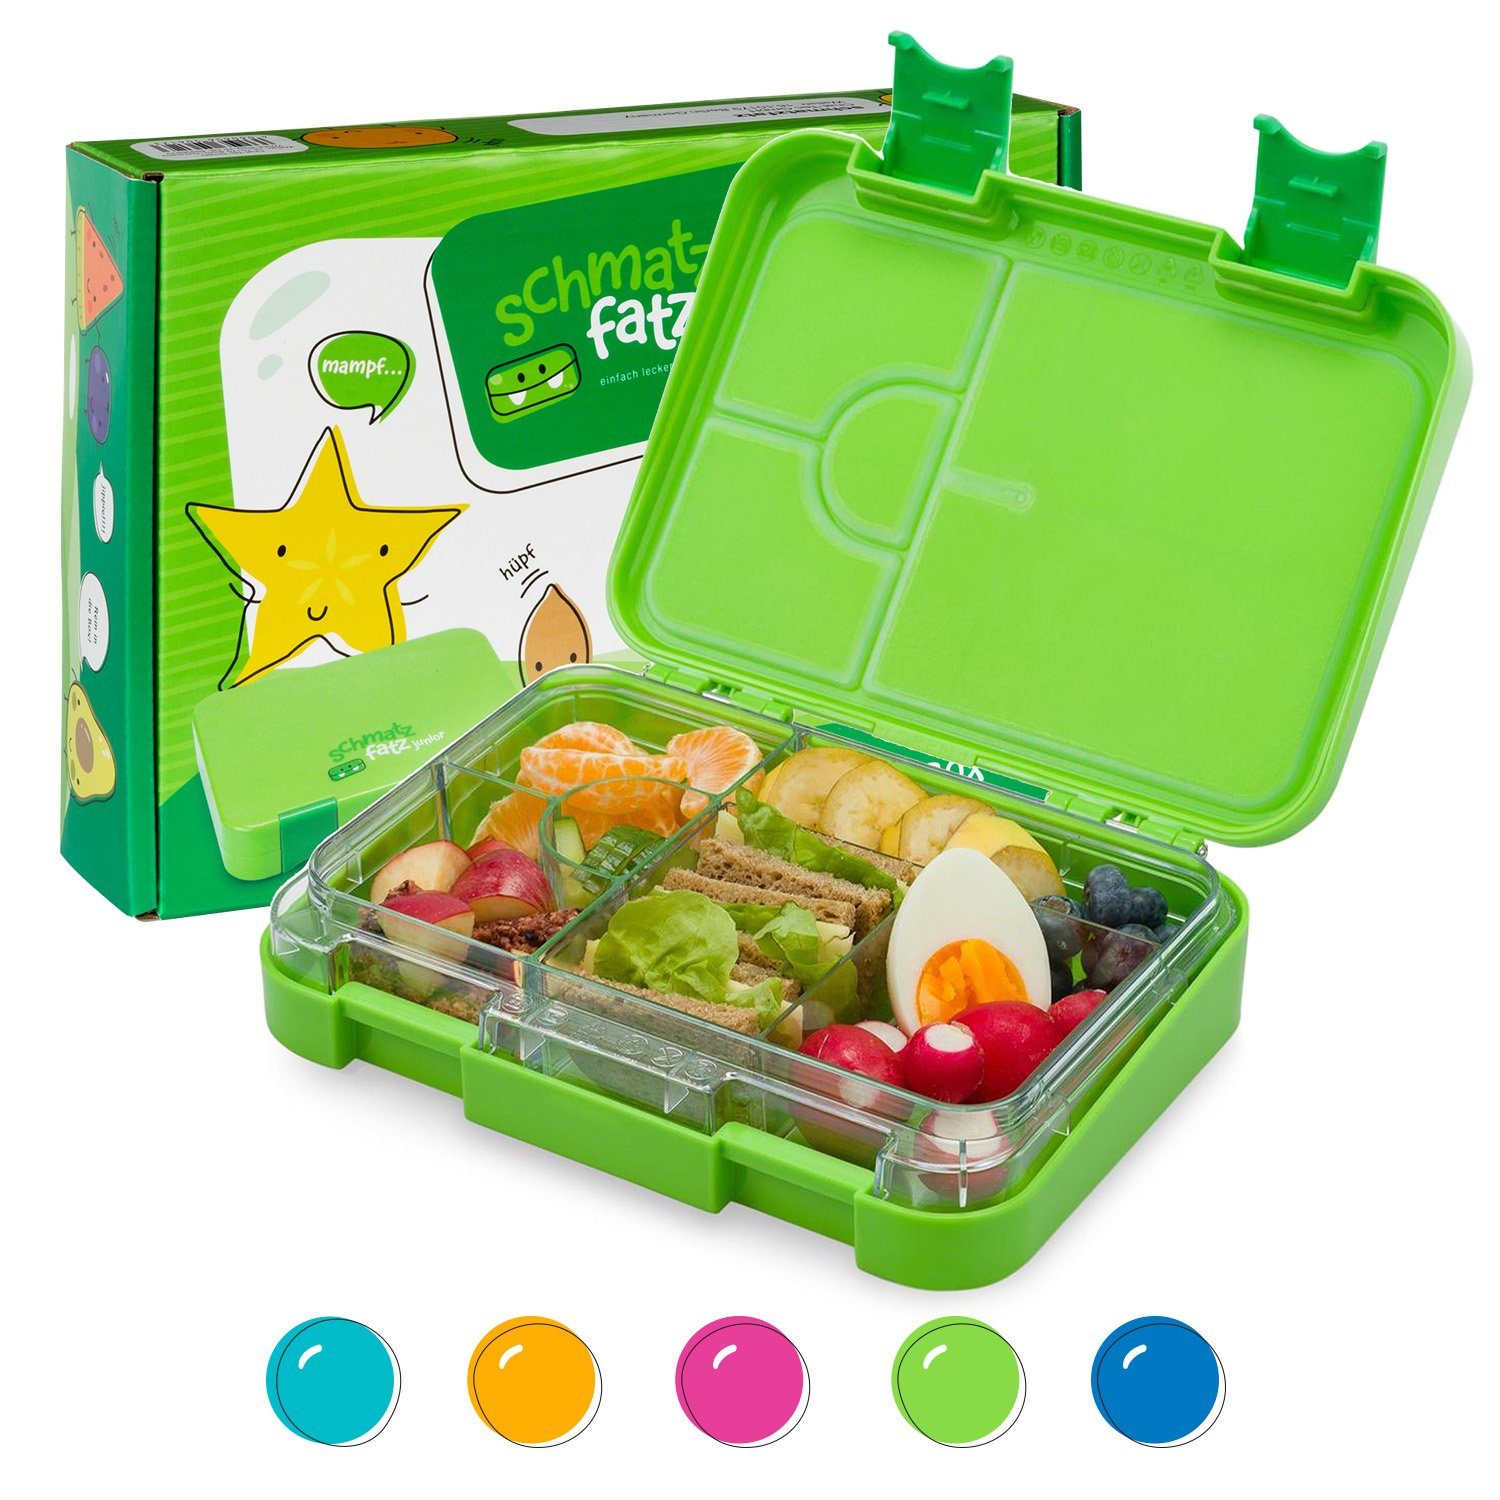 Klarstein Frischhaltedose schmatzfatz junior Lunchbox, Kunststoff Grün